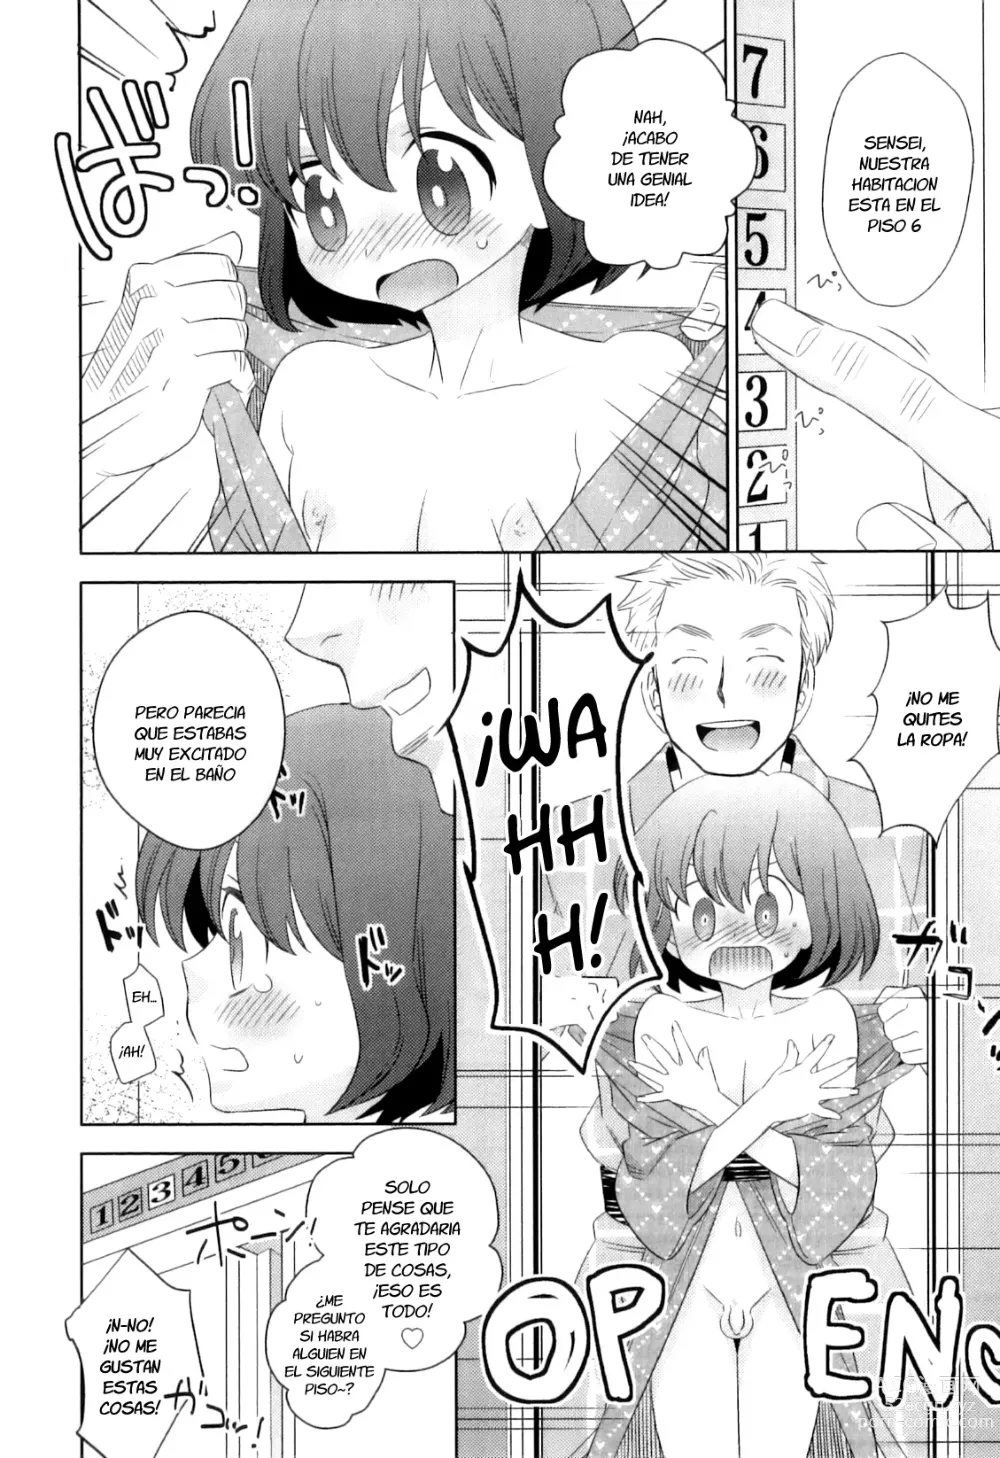 Page 6 of manga Ro*Buro